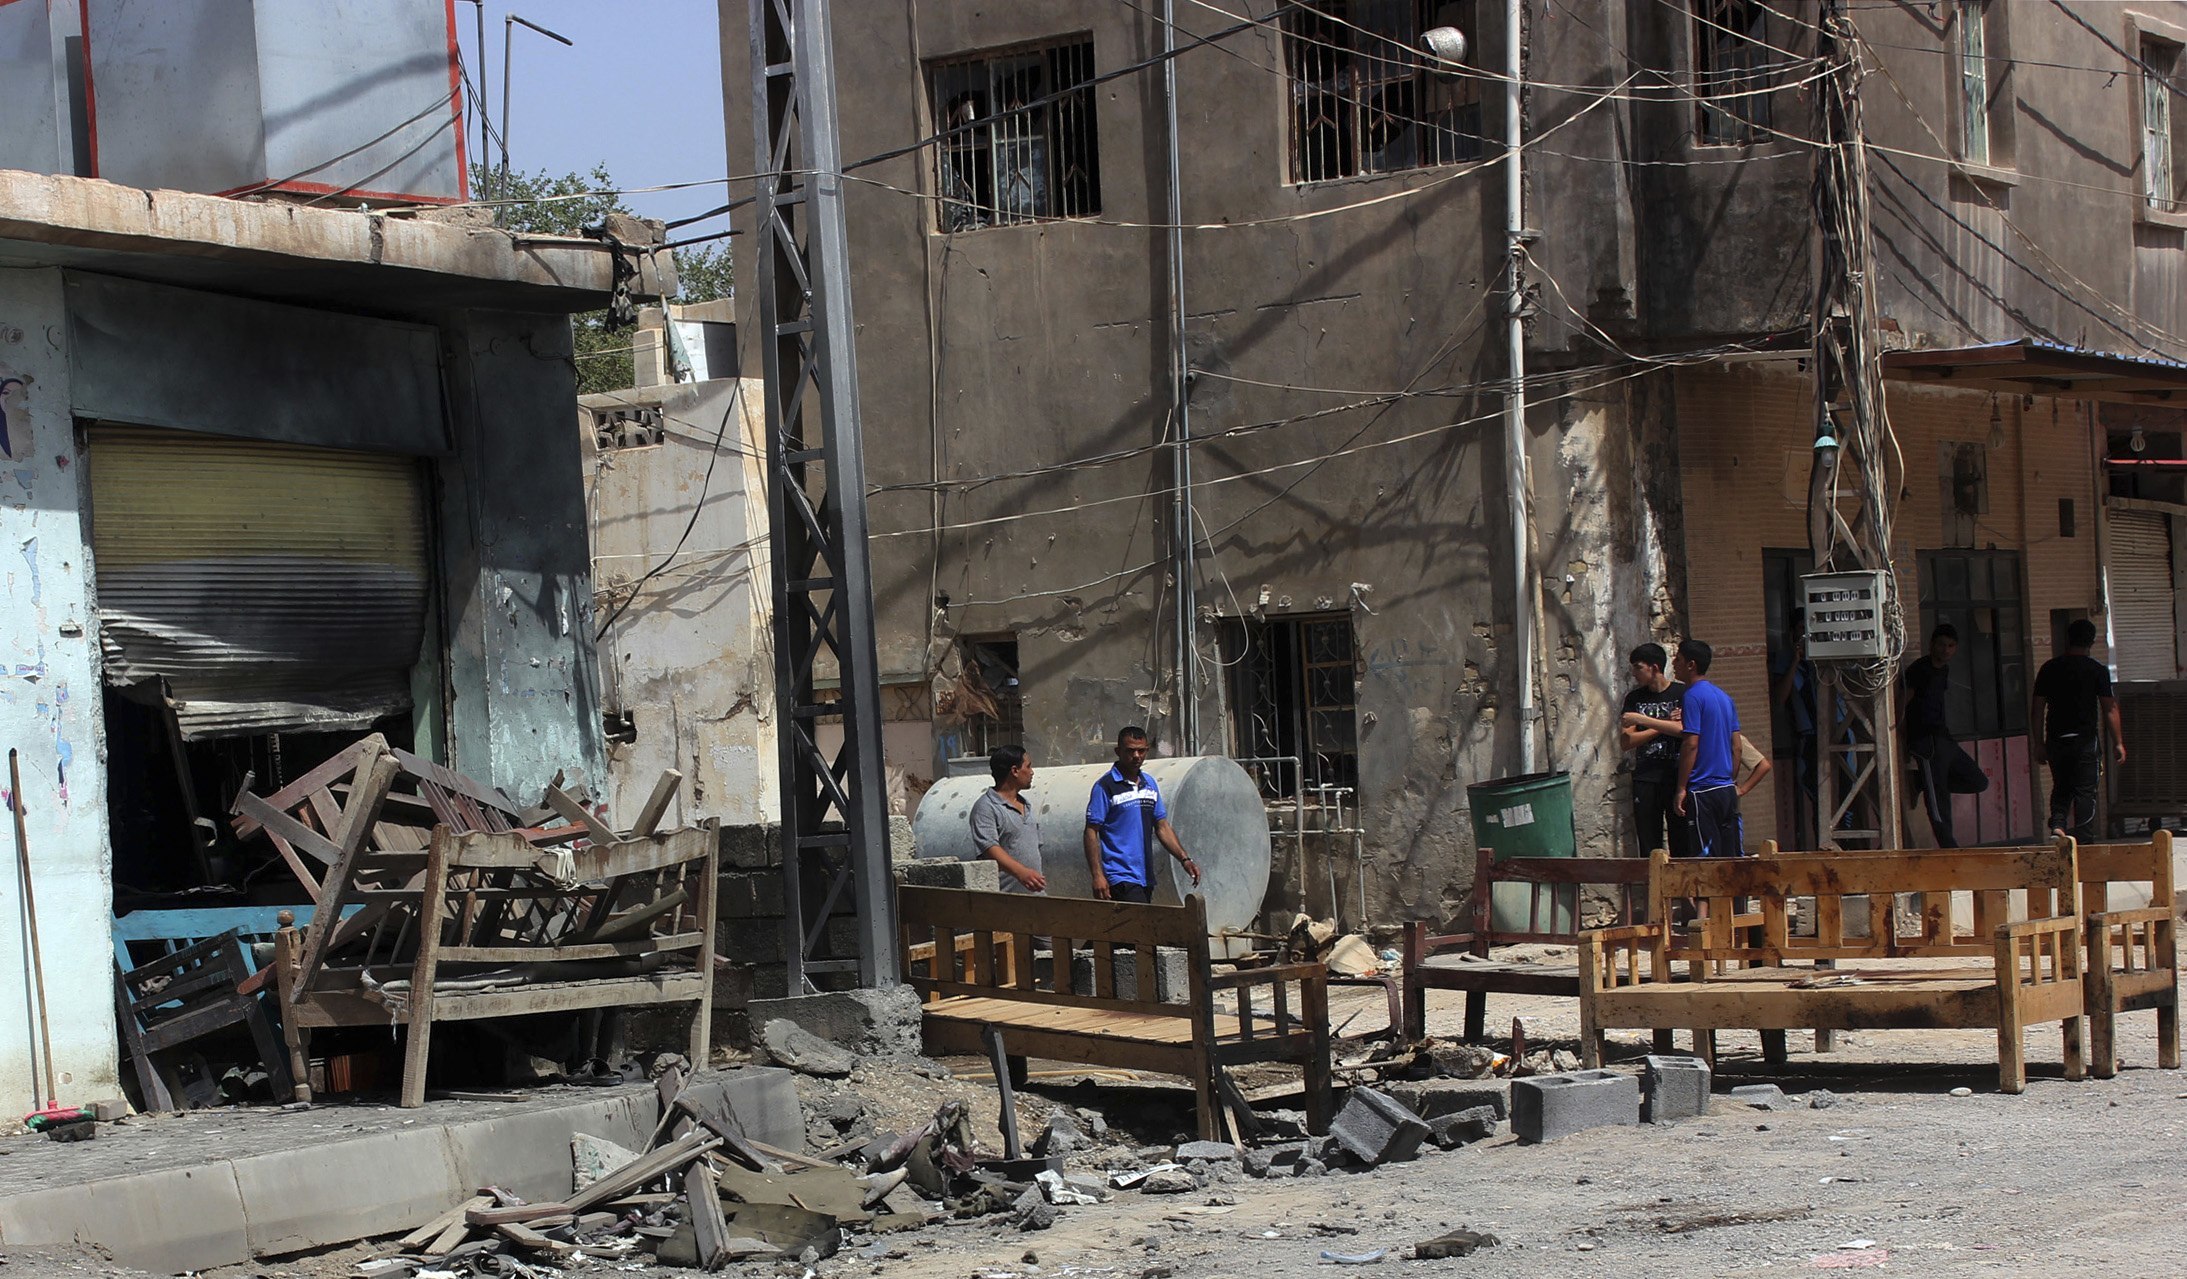 35 νεκροί και πάνω από 100 τραυματίες σε εκρήξεις στο κέντρο της Βαγδάτης